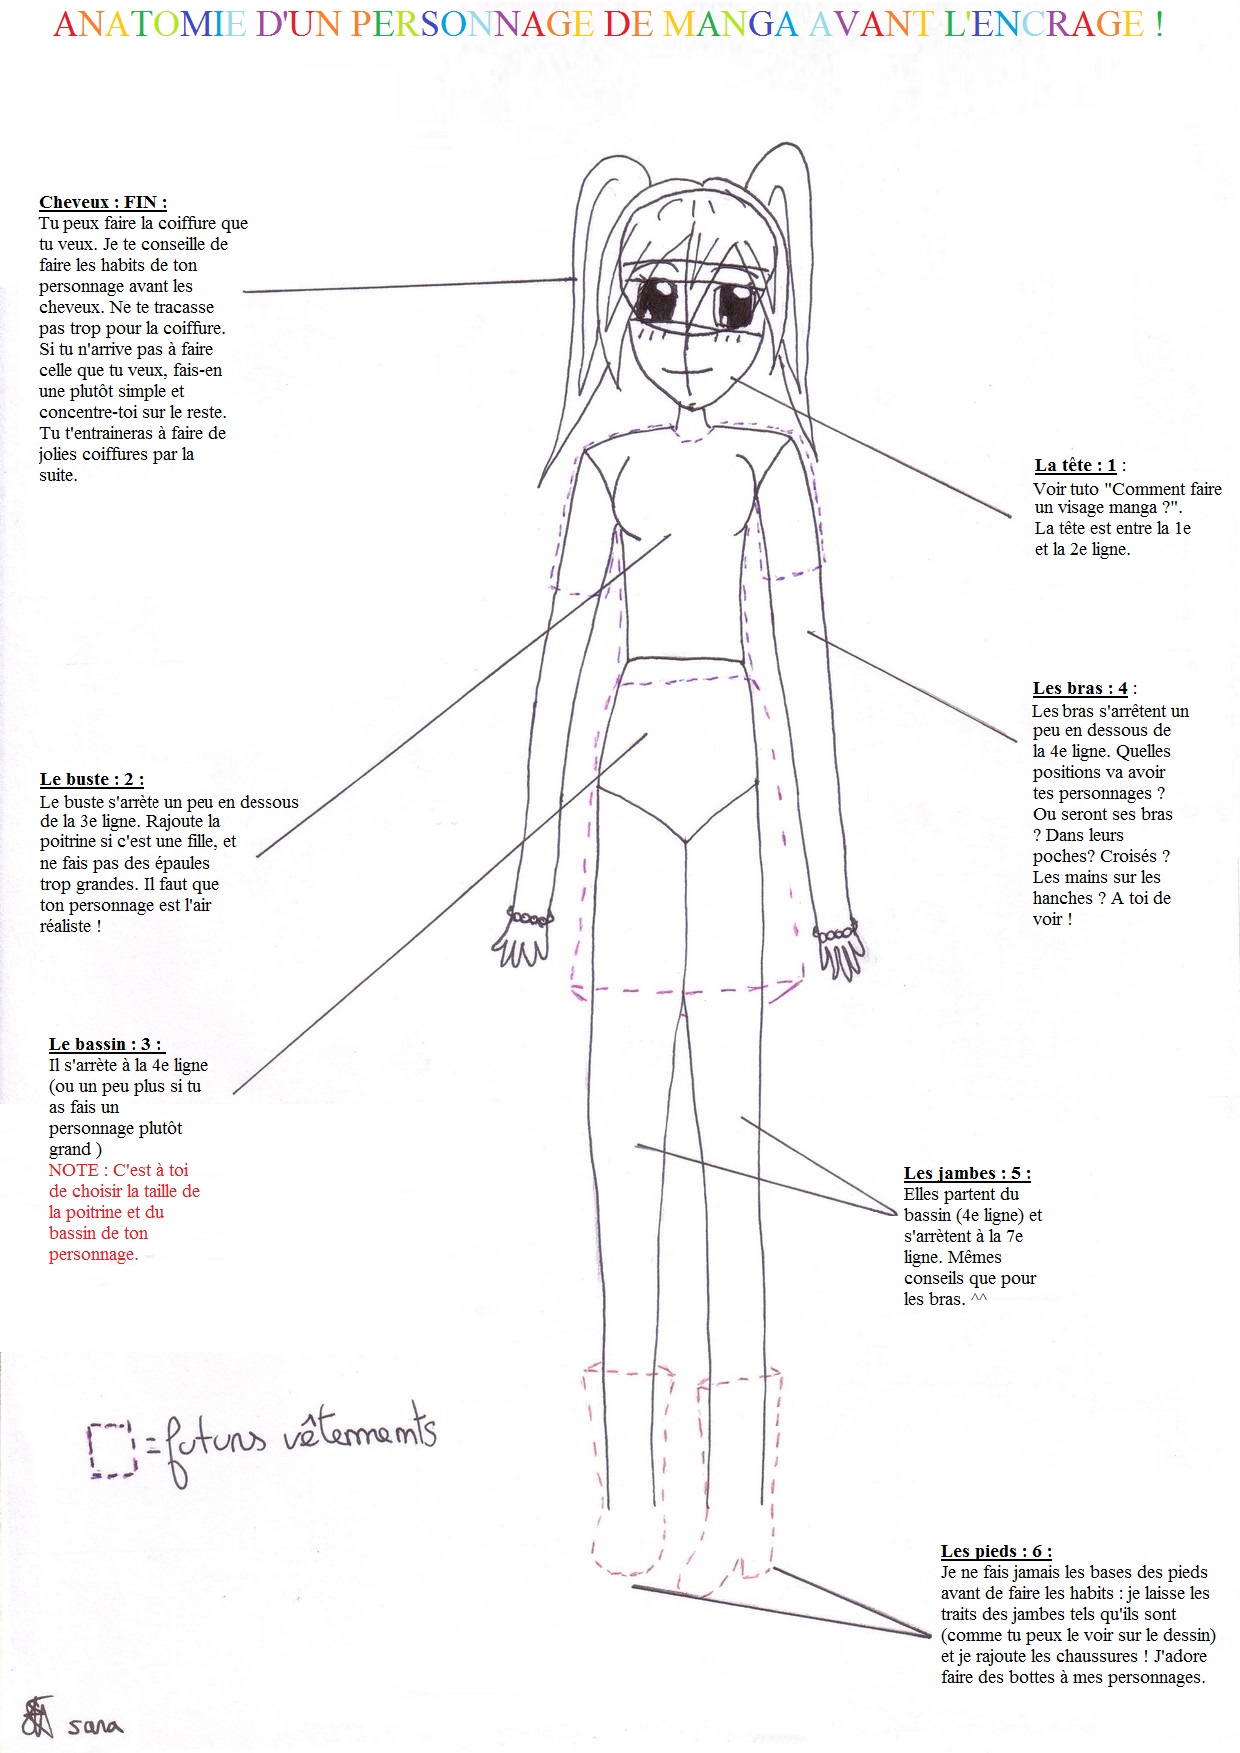 Anatomie Dun Personnage De Manga Avant Lencrage C Le